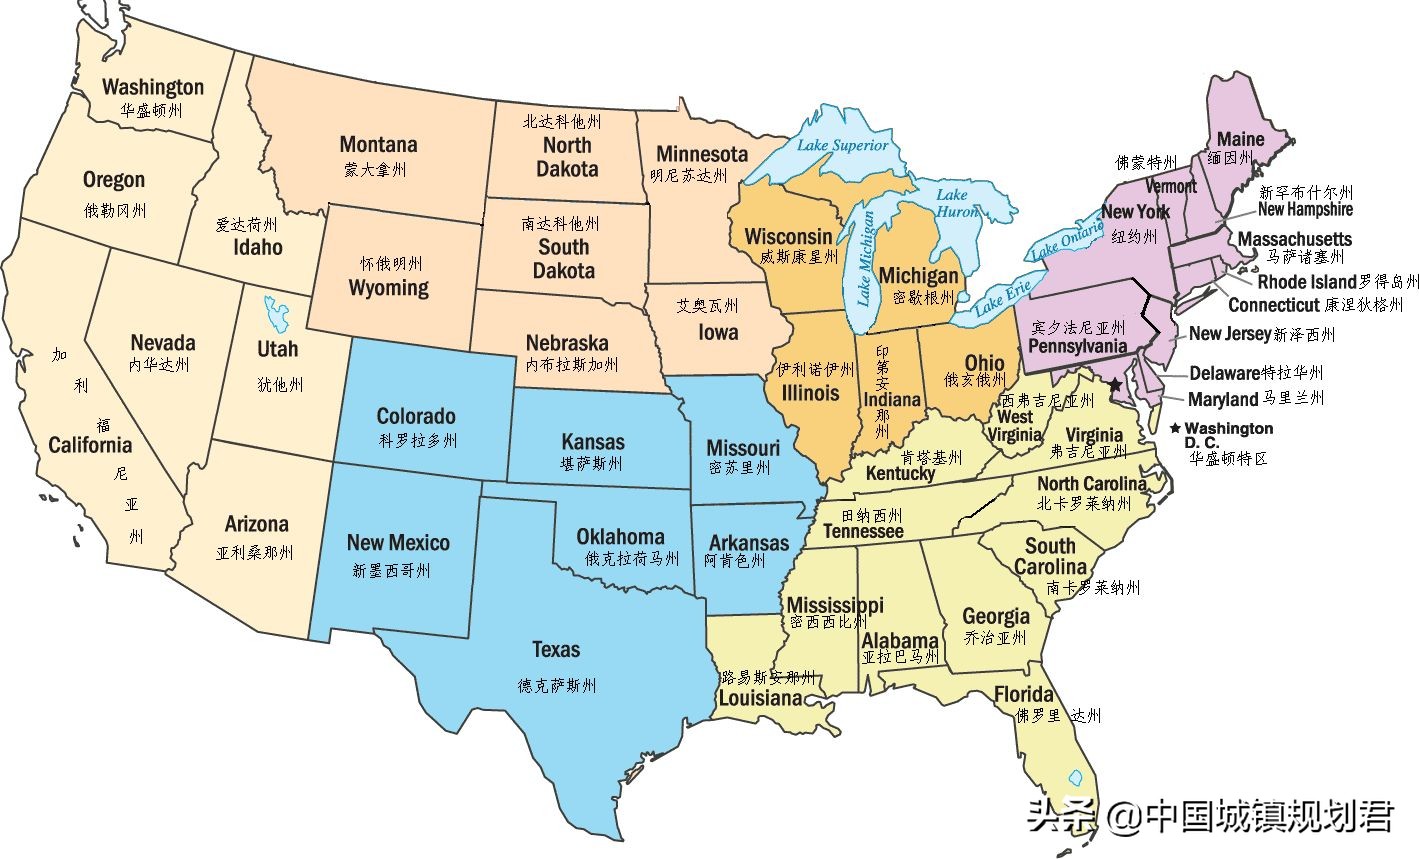 美国州界还有一个神奇之处,那就是你只要看看美国的地图,就会发现美国